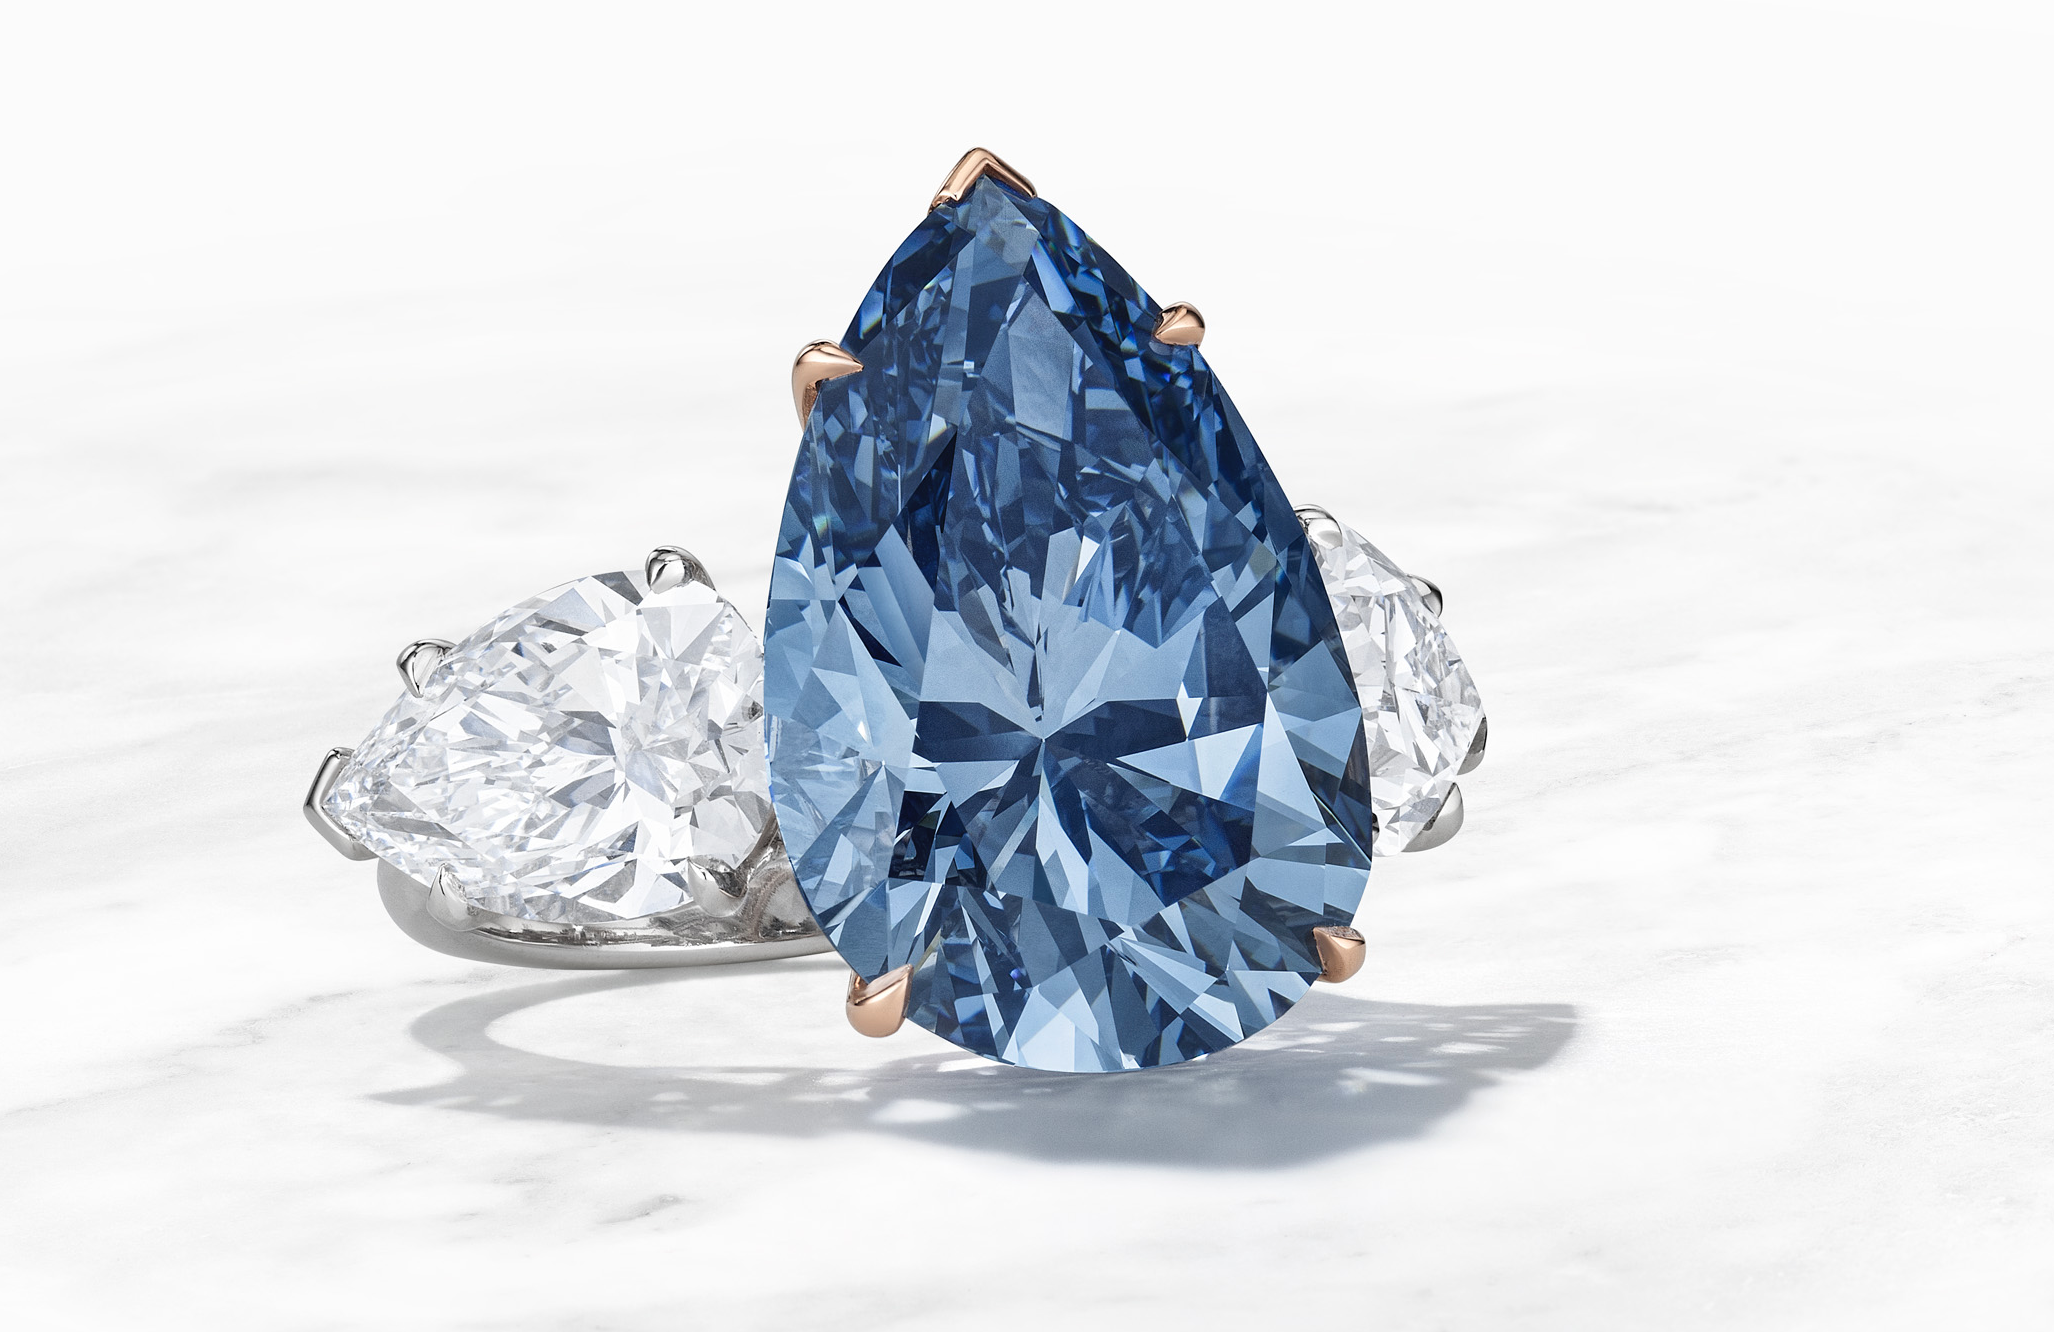 Bleu Royal. Christie’s porta in asta un diamante blu “degno di un re”: 17.61 ct per una stima fino a 50 milioni